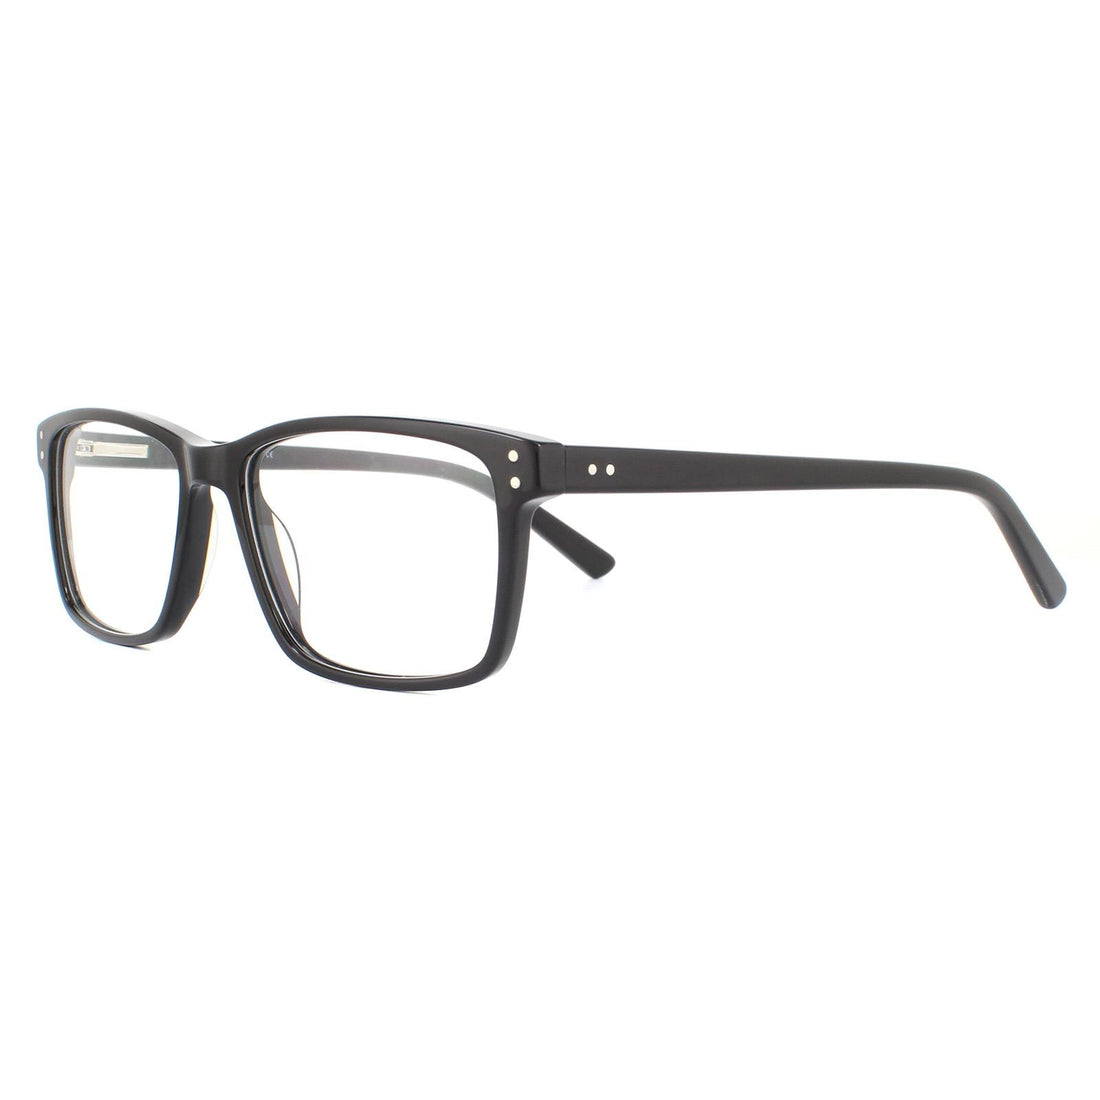 SunOptic A85 Glasses Frames